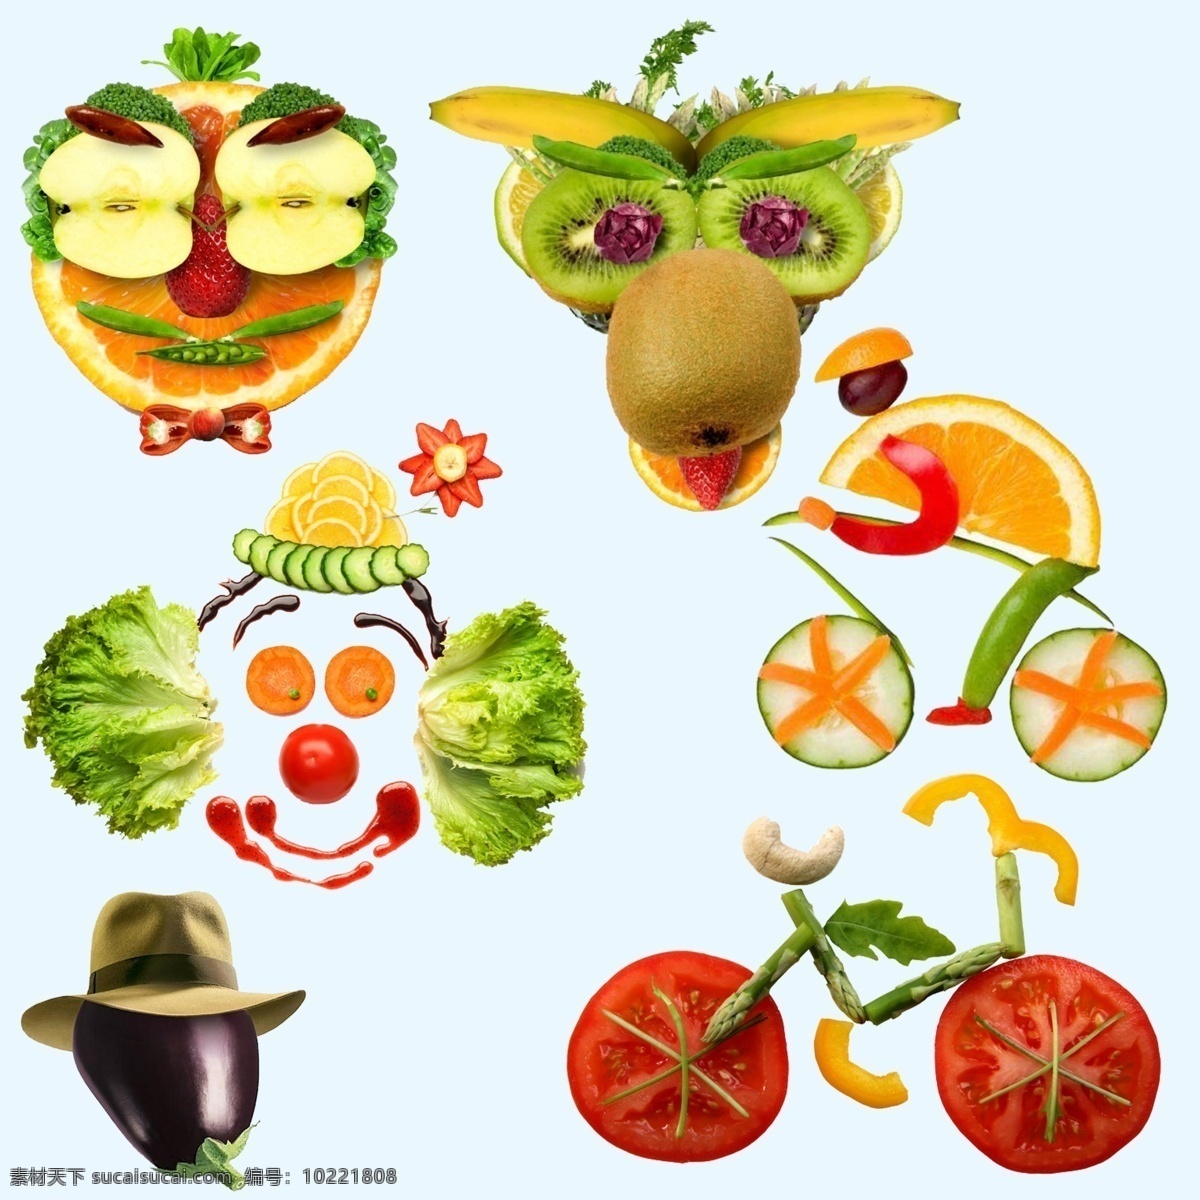 创意造型水果 创意水果 水果造型 水果拼图 水果人面像 水果小丑 好吃的水果 创意水果素材 运动的水果 白色